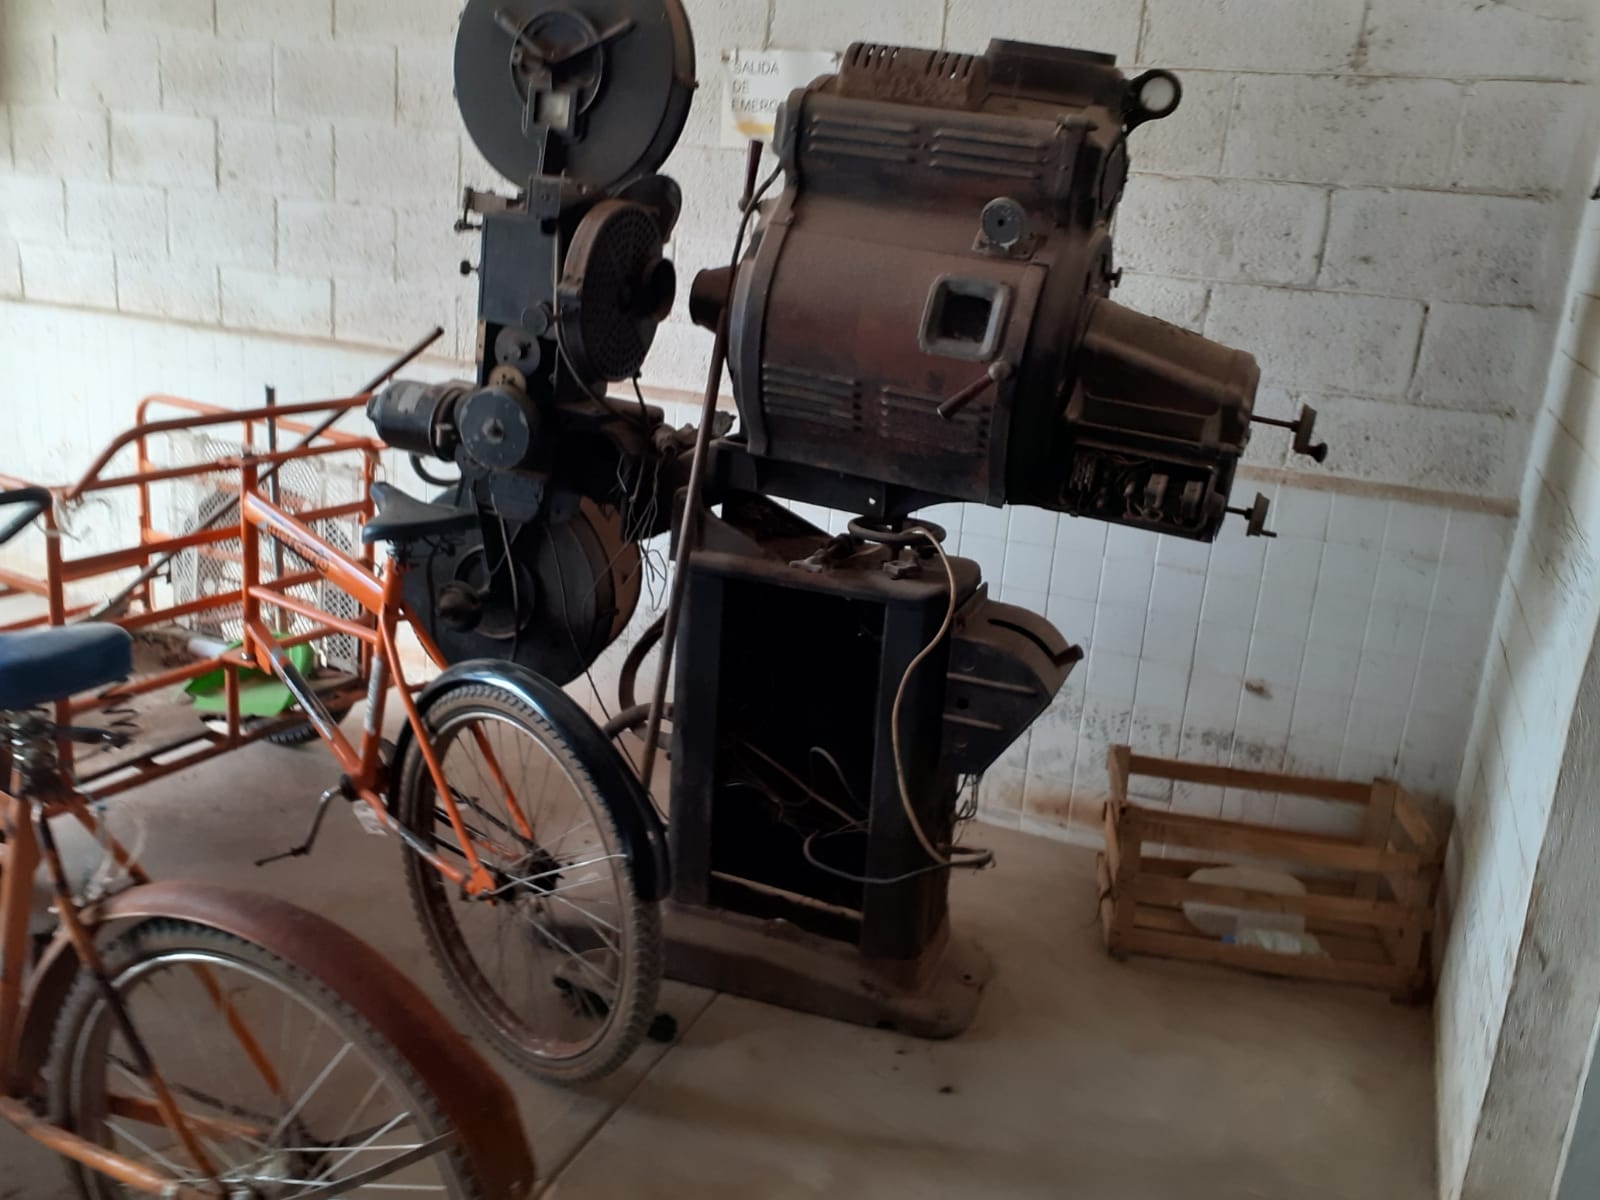 Proyector antiguo de cine, una reliquia abandonada en José María Morelos